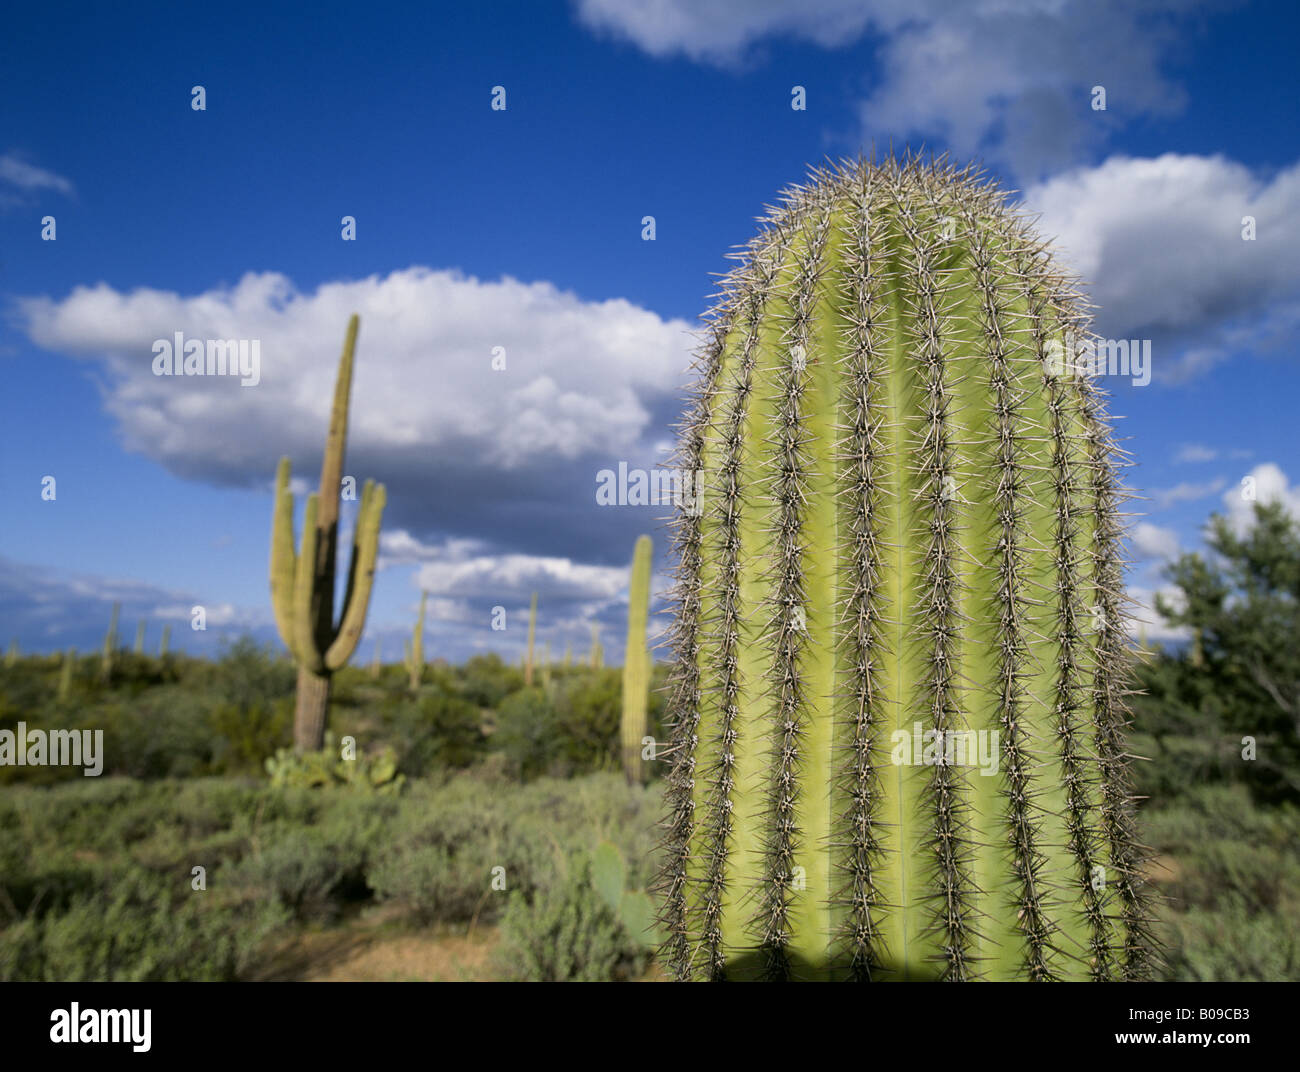 Un saguaro cactus et ses épines de Saguaro National Park dans le désert de Sonora, près de Tucson en Arizona Banque D'Images